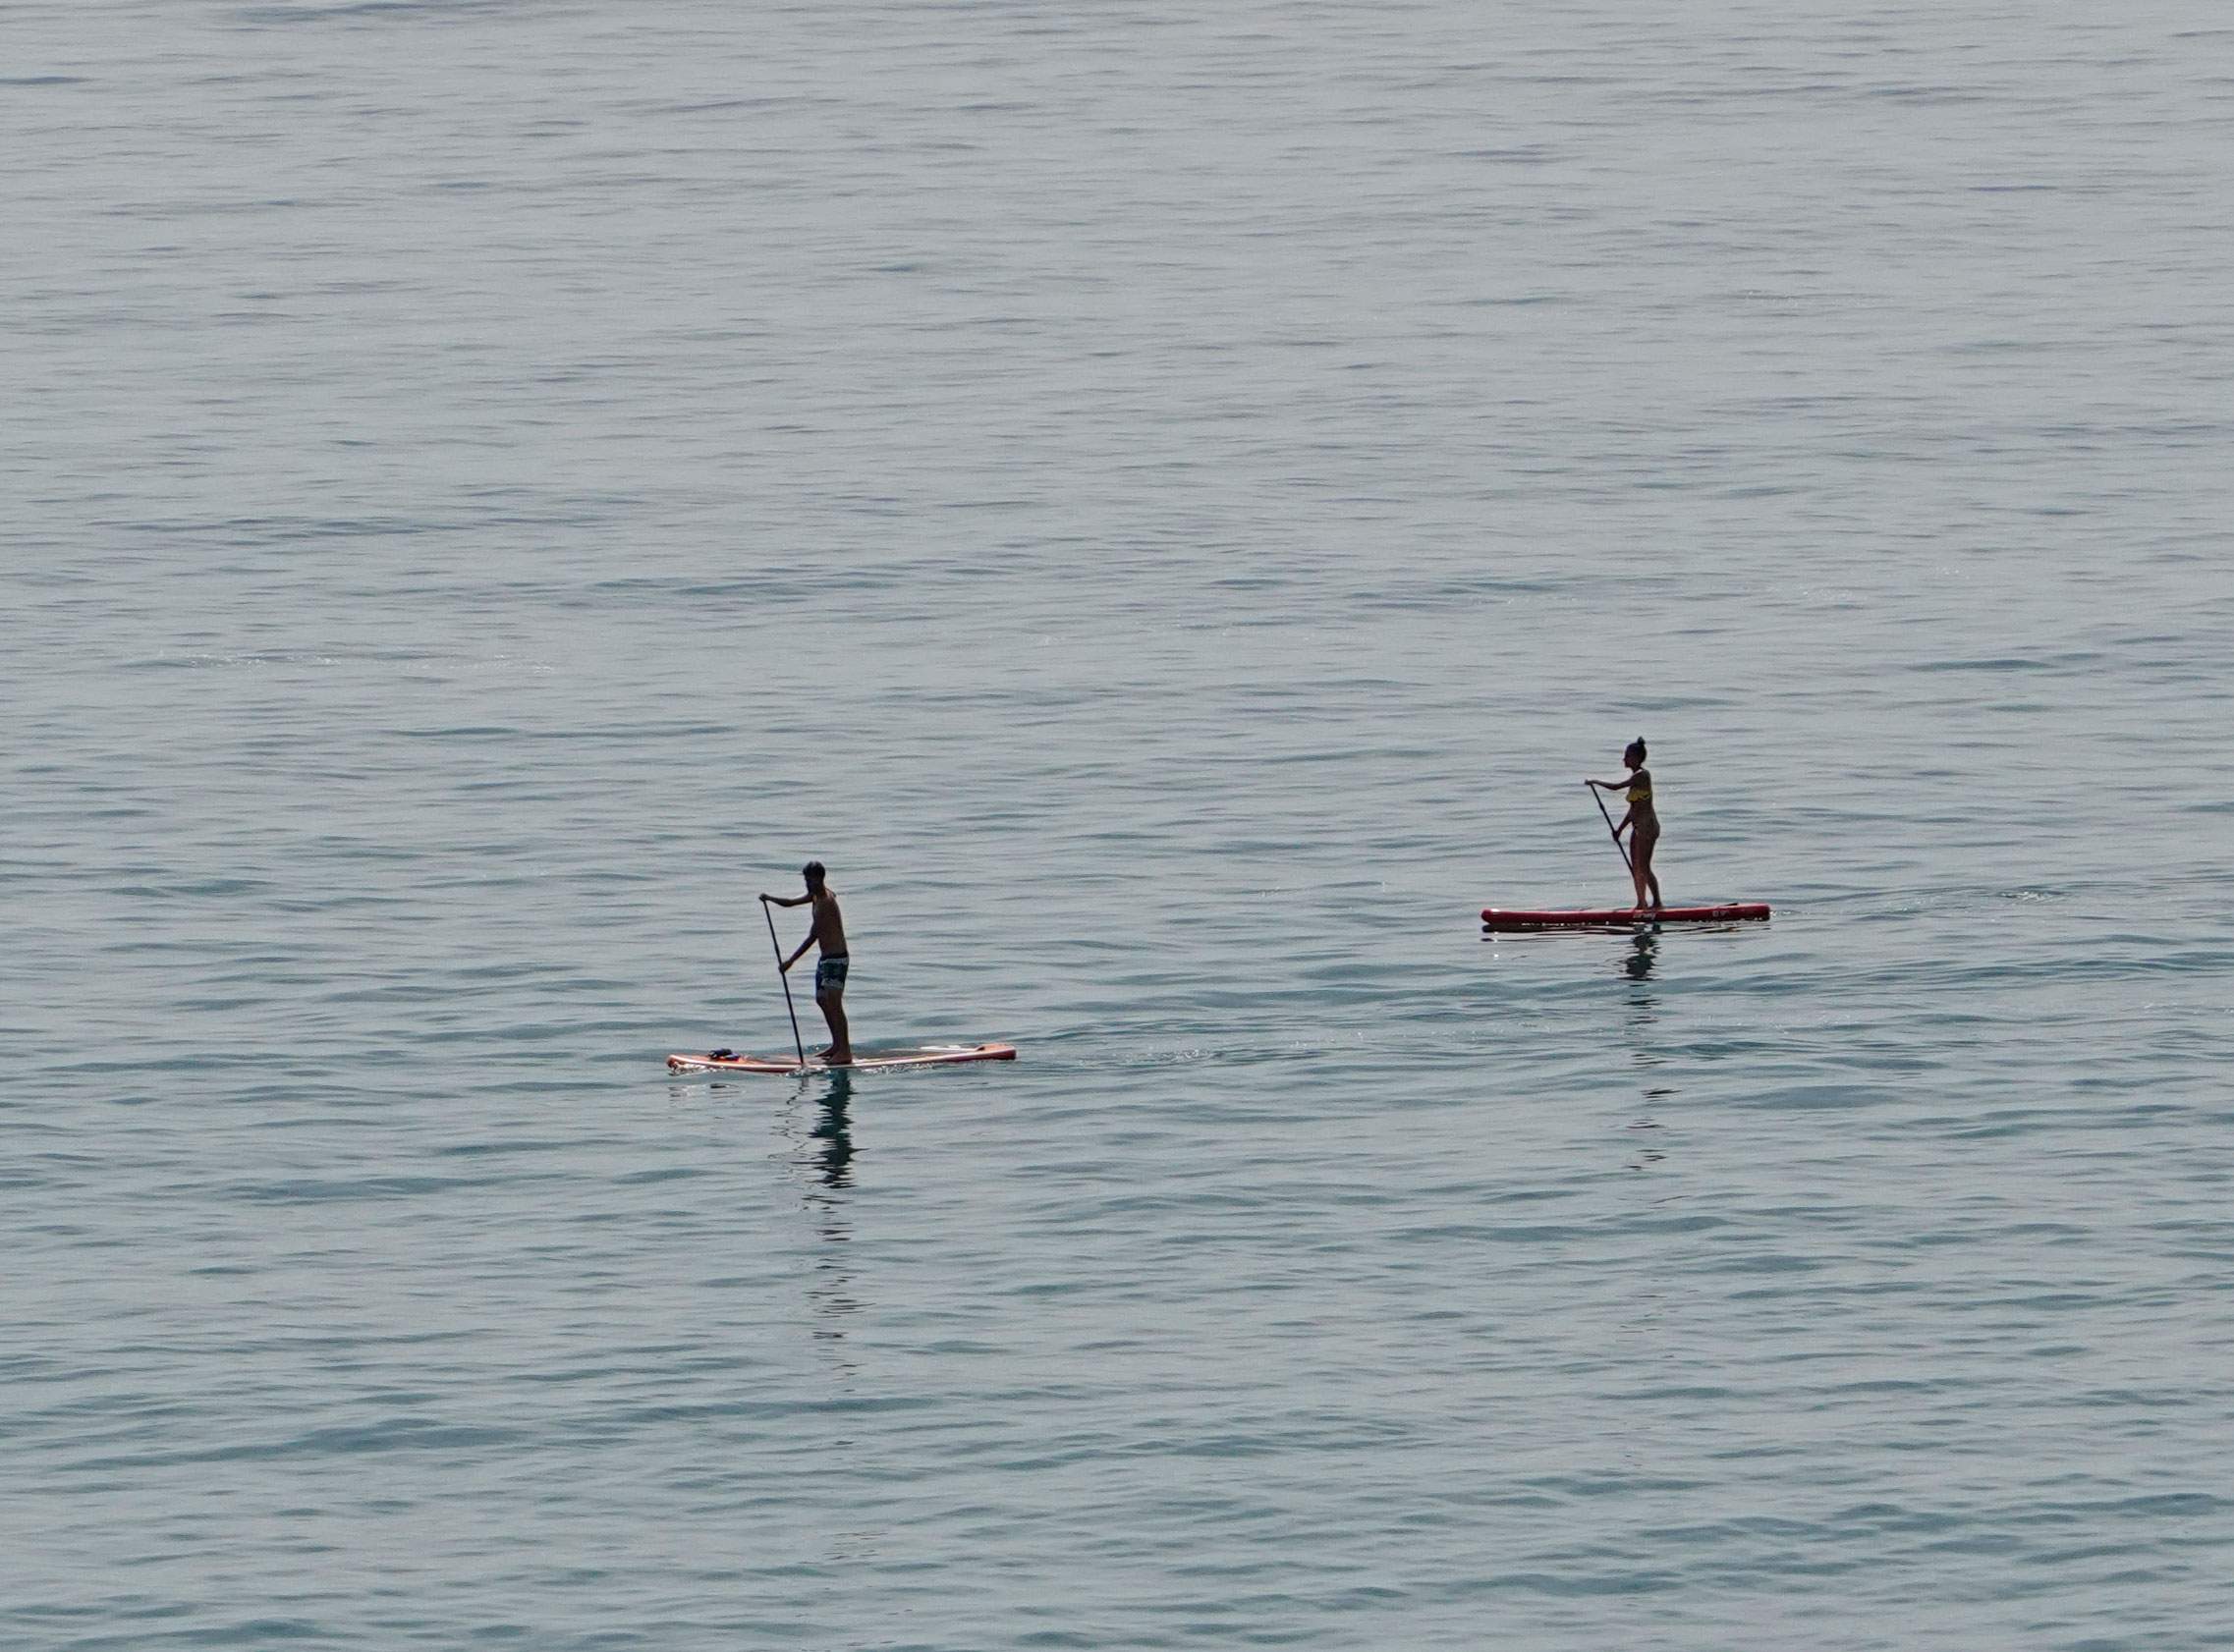 Gratis Paddle Surf Cursus in Nerja Aangeboden door Provinciale Regering van Málaga